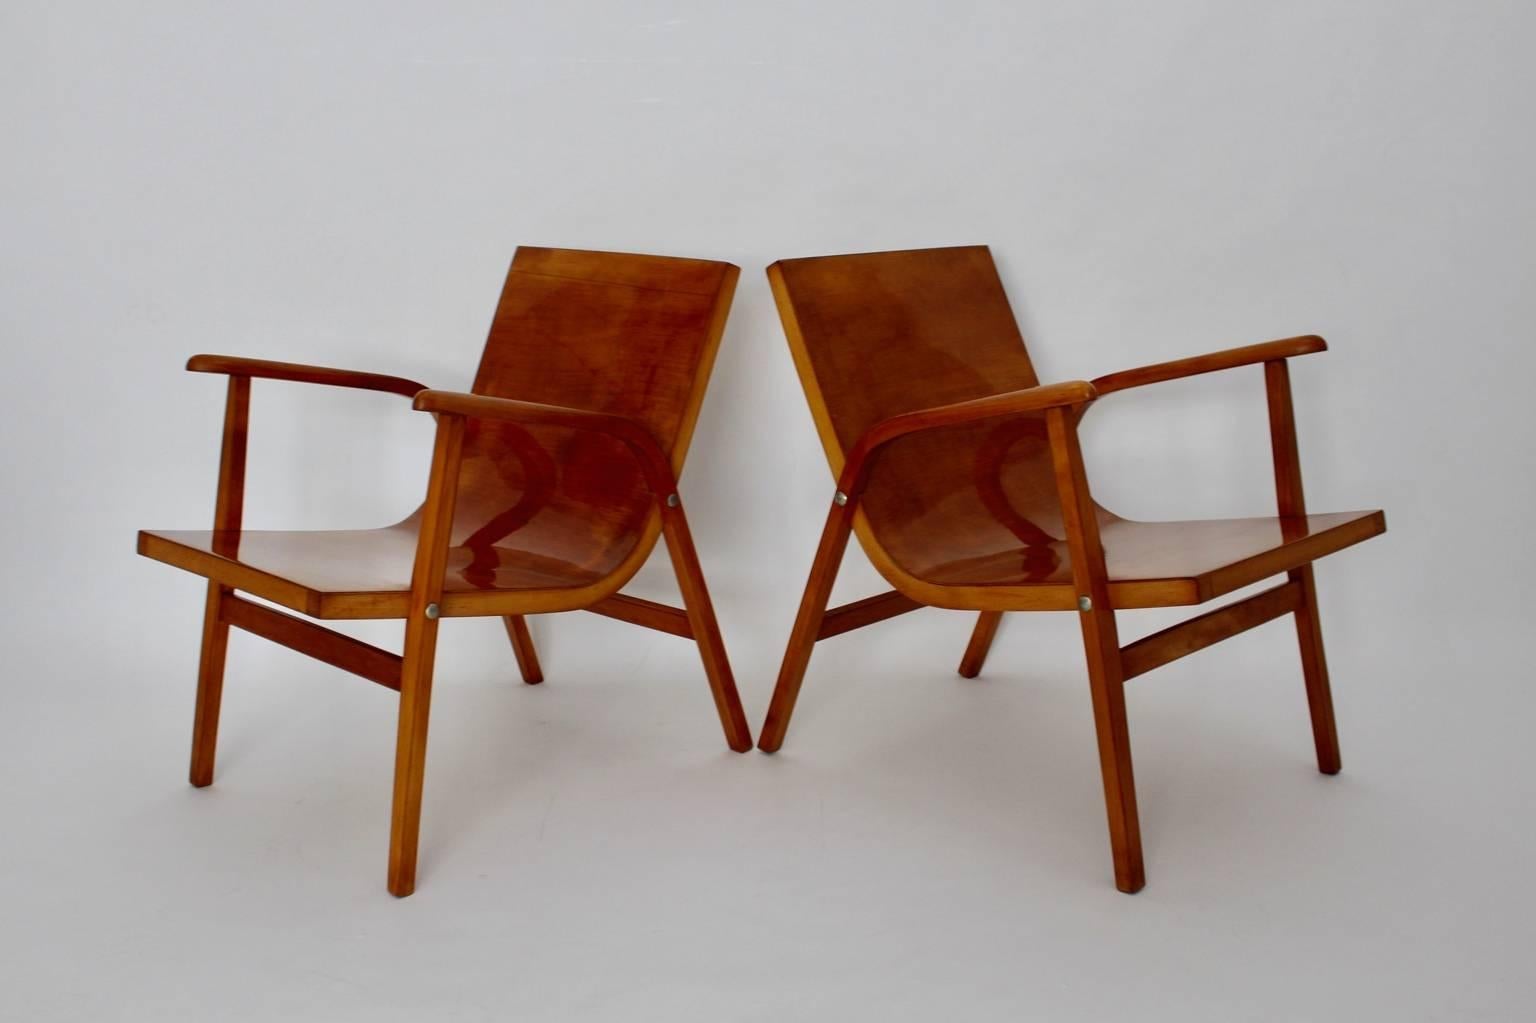 Paire de chaises longues en hêtre de style moderne du milieu du siècle, conçues par Roland Rainer, Vienna 1952 pour le Café Ritter à Vienne, et fabriquées par Emil & Alfred Pollak, Vienna.

Les chaises de salon simples et chics sont fabriquées en